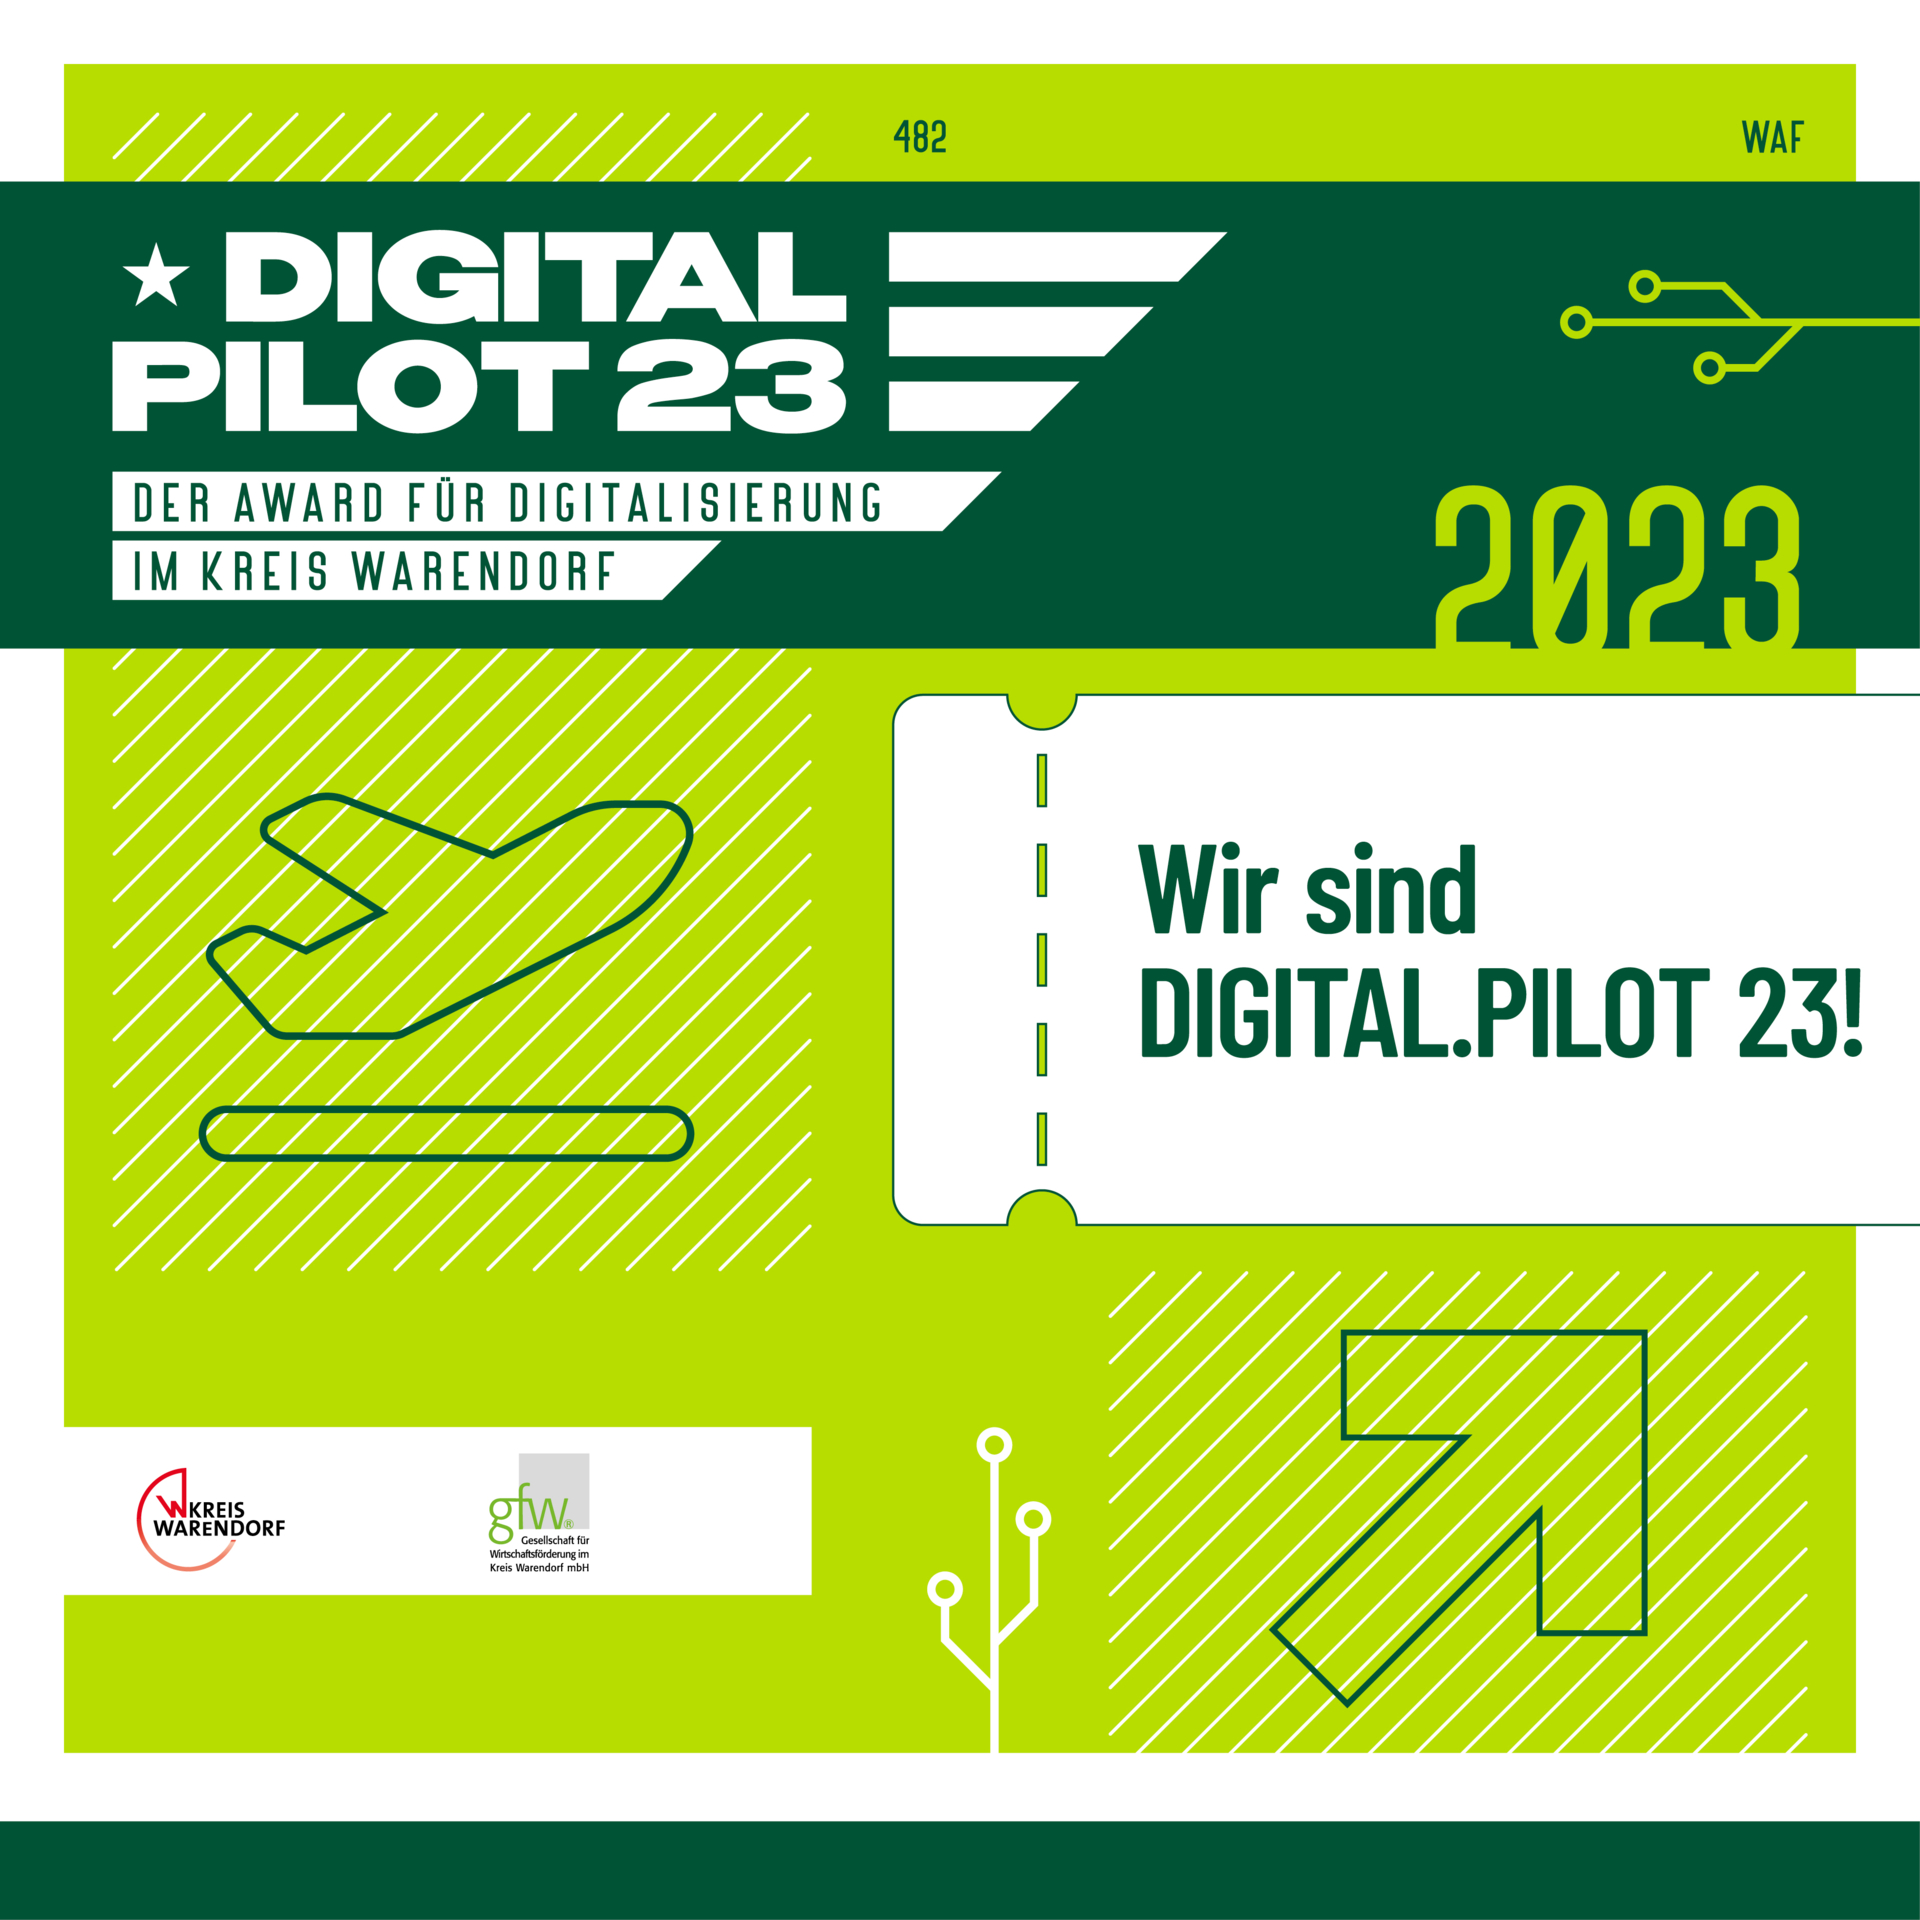 DigitalPilot23